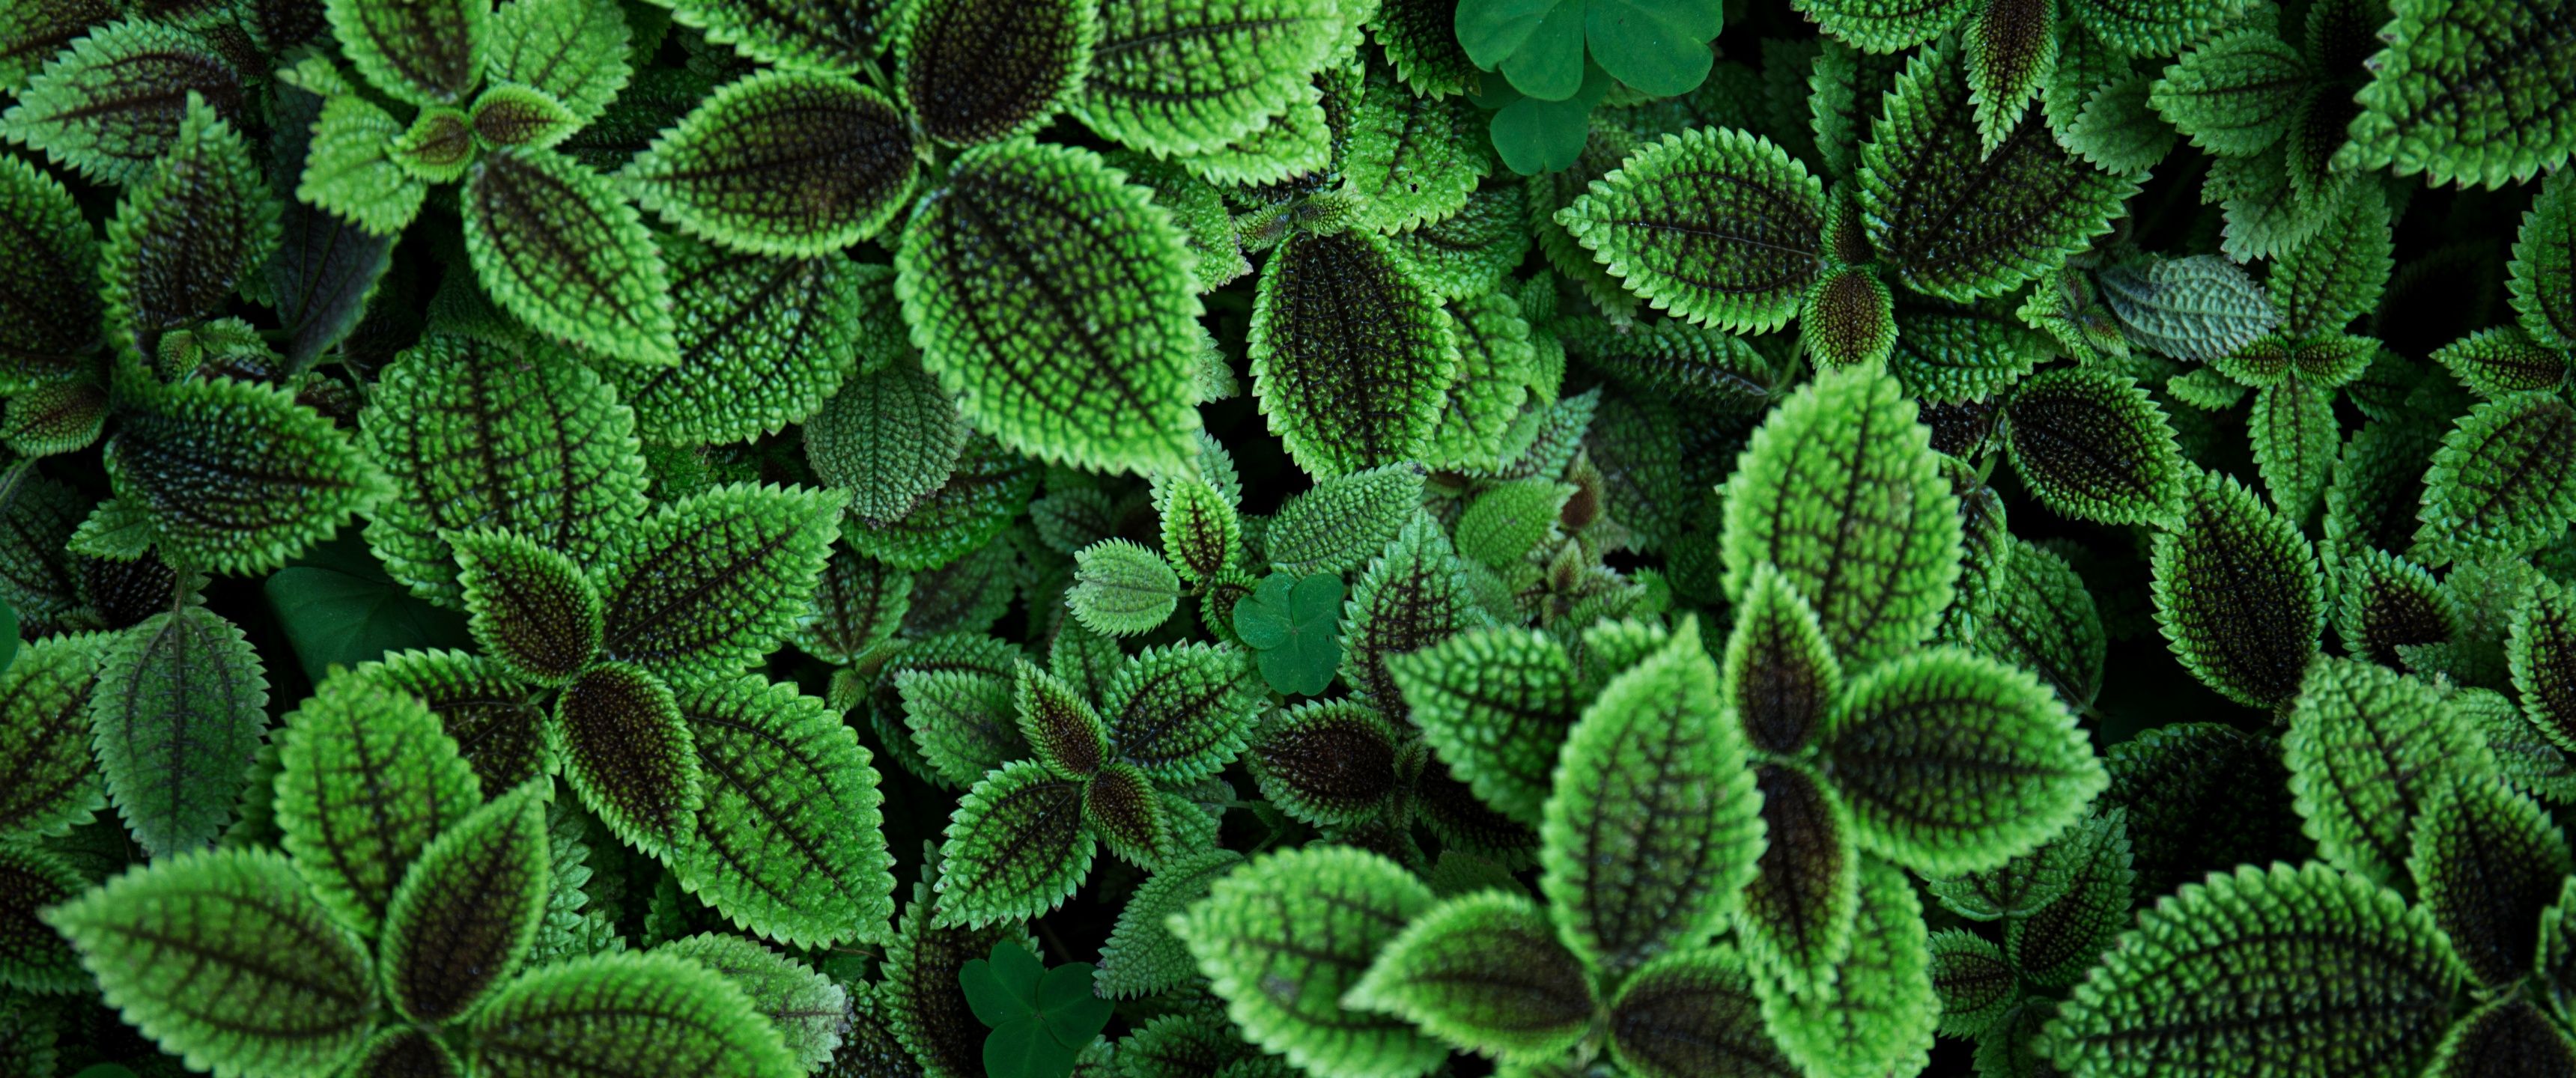 Green leaves Wallpaper 4K, Aesthetic, Plant, 5K, Sage green